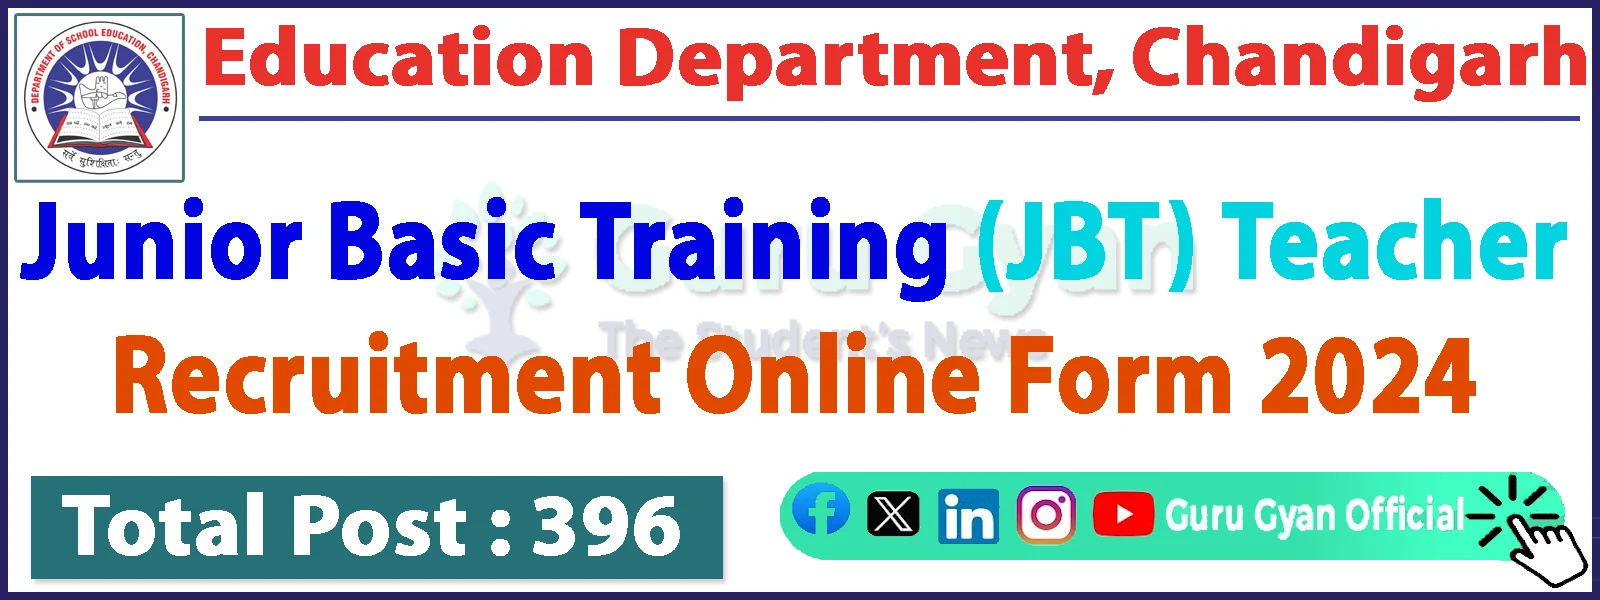 Chandigarh JBT Teacher Online Form 2024